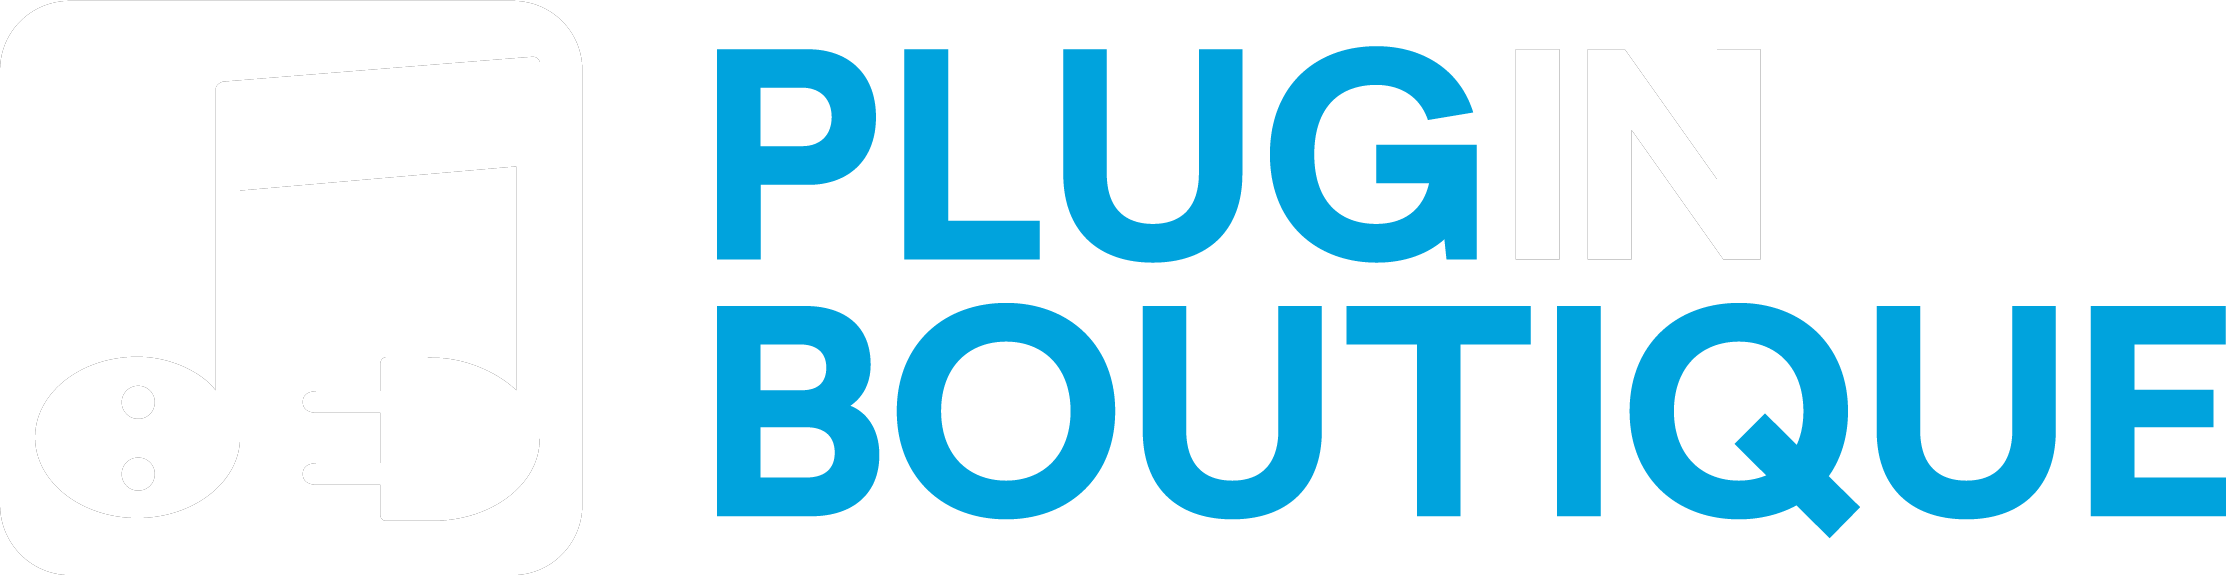 pluginboutique logo